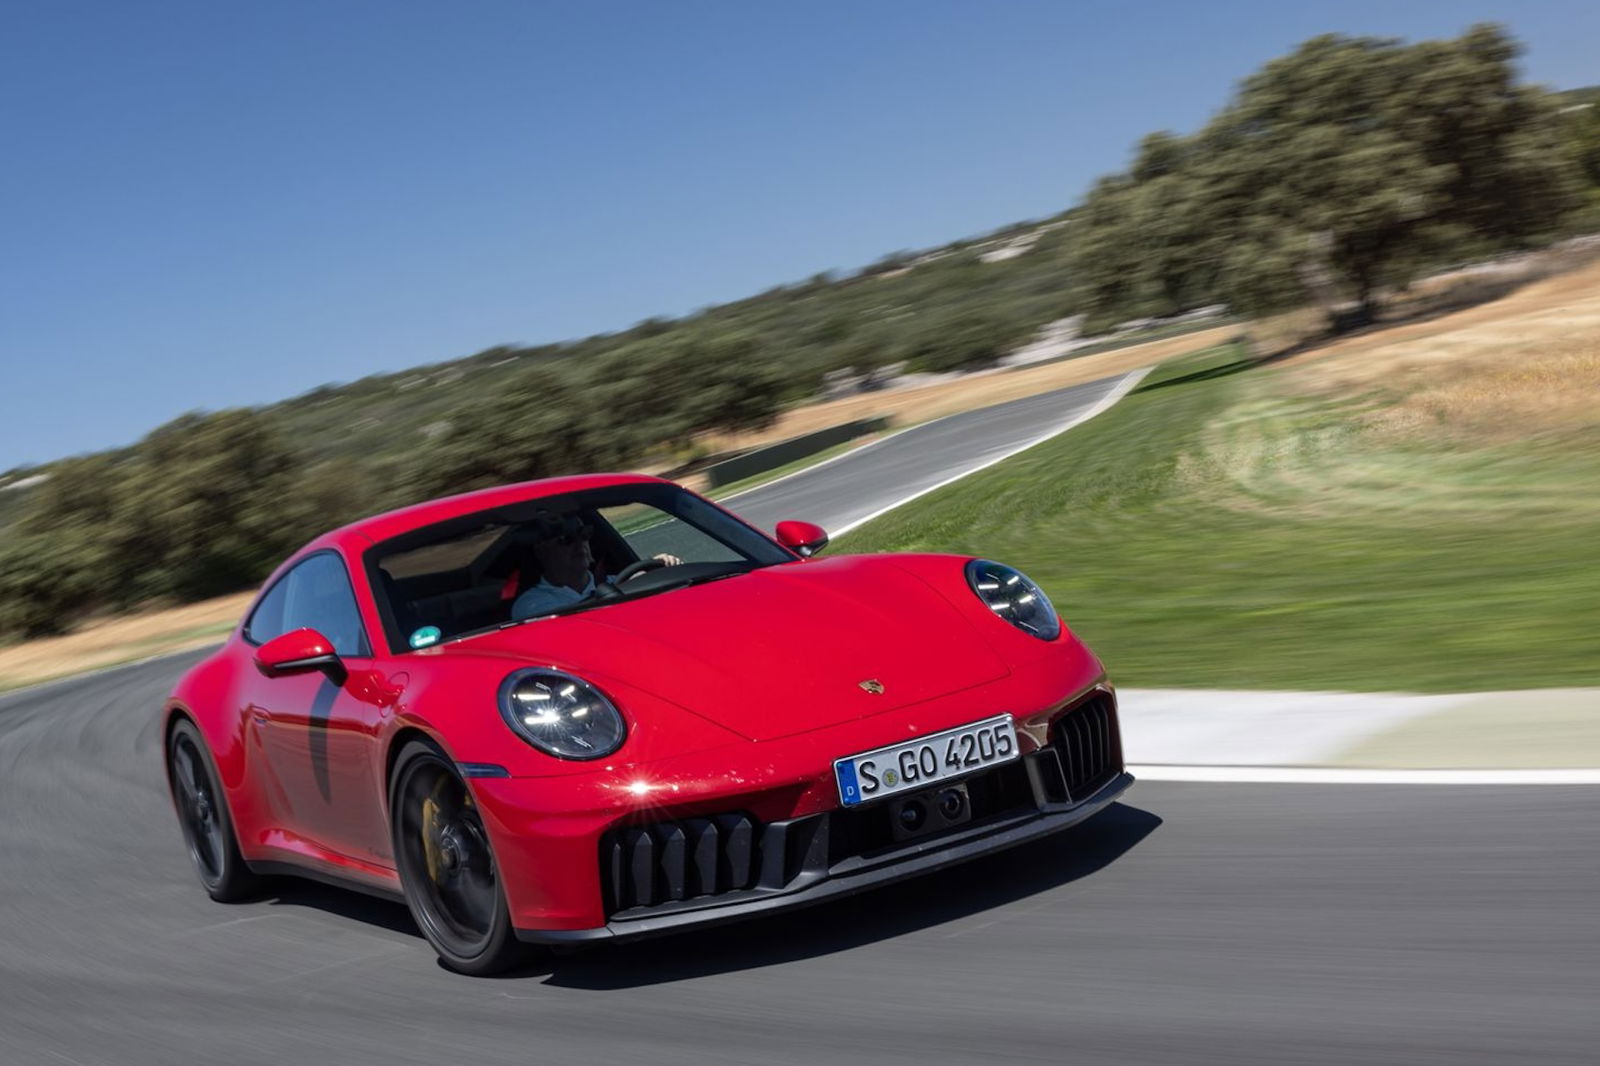 Porsche liefert starkes zweites Quartal mit 17 Prozent Rendite